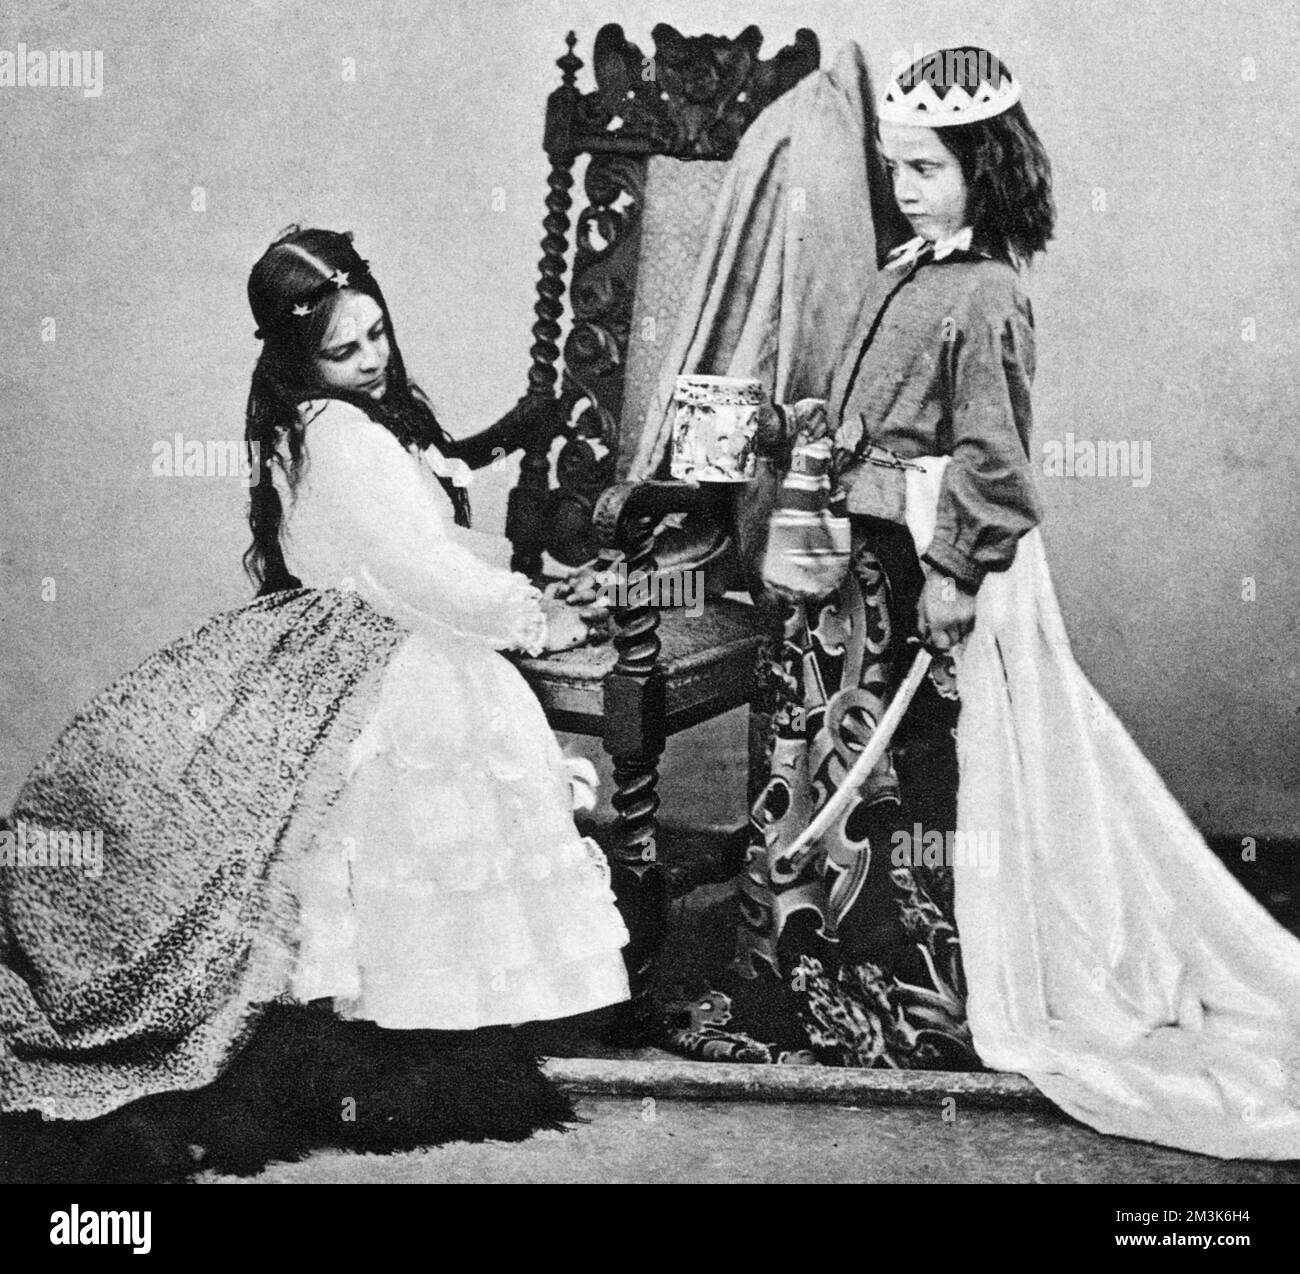 Lewis Carroll (Rev. Charles L. Dodgson) von "Fair Rosamond", einer schicken Kleidergruppe, im Juni 1863 in Oxford. Die gezeigten Kinder sind Annie M. Rogers als „Queen Eleanor“ (rechts) und Mary Jackson als „Fair Rosamond“. Stockfoto